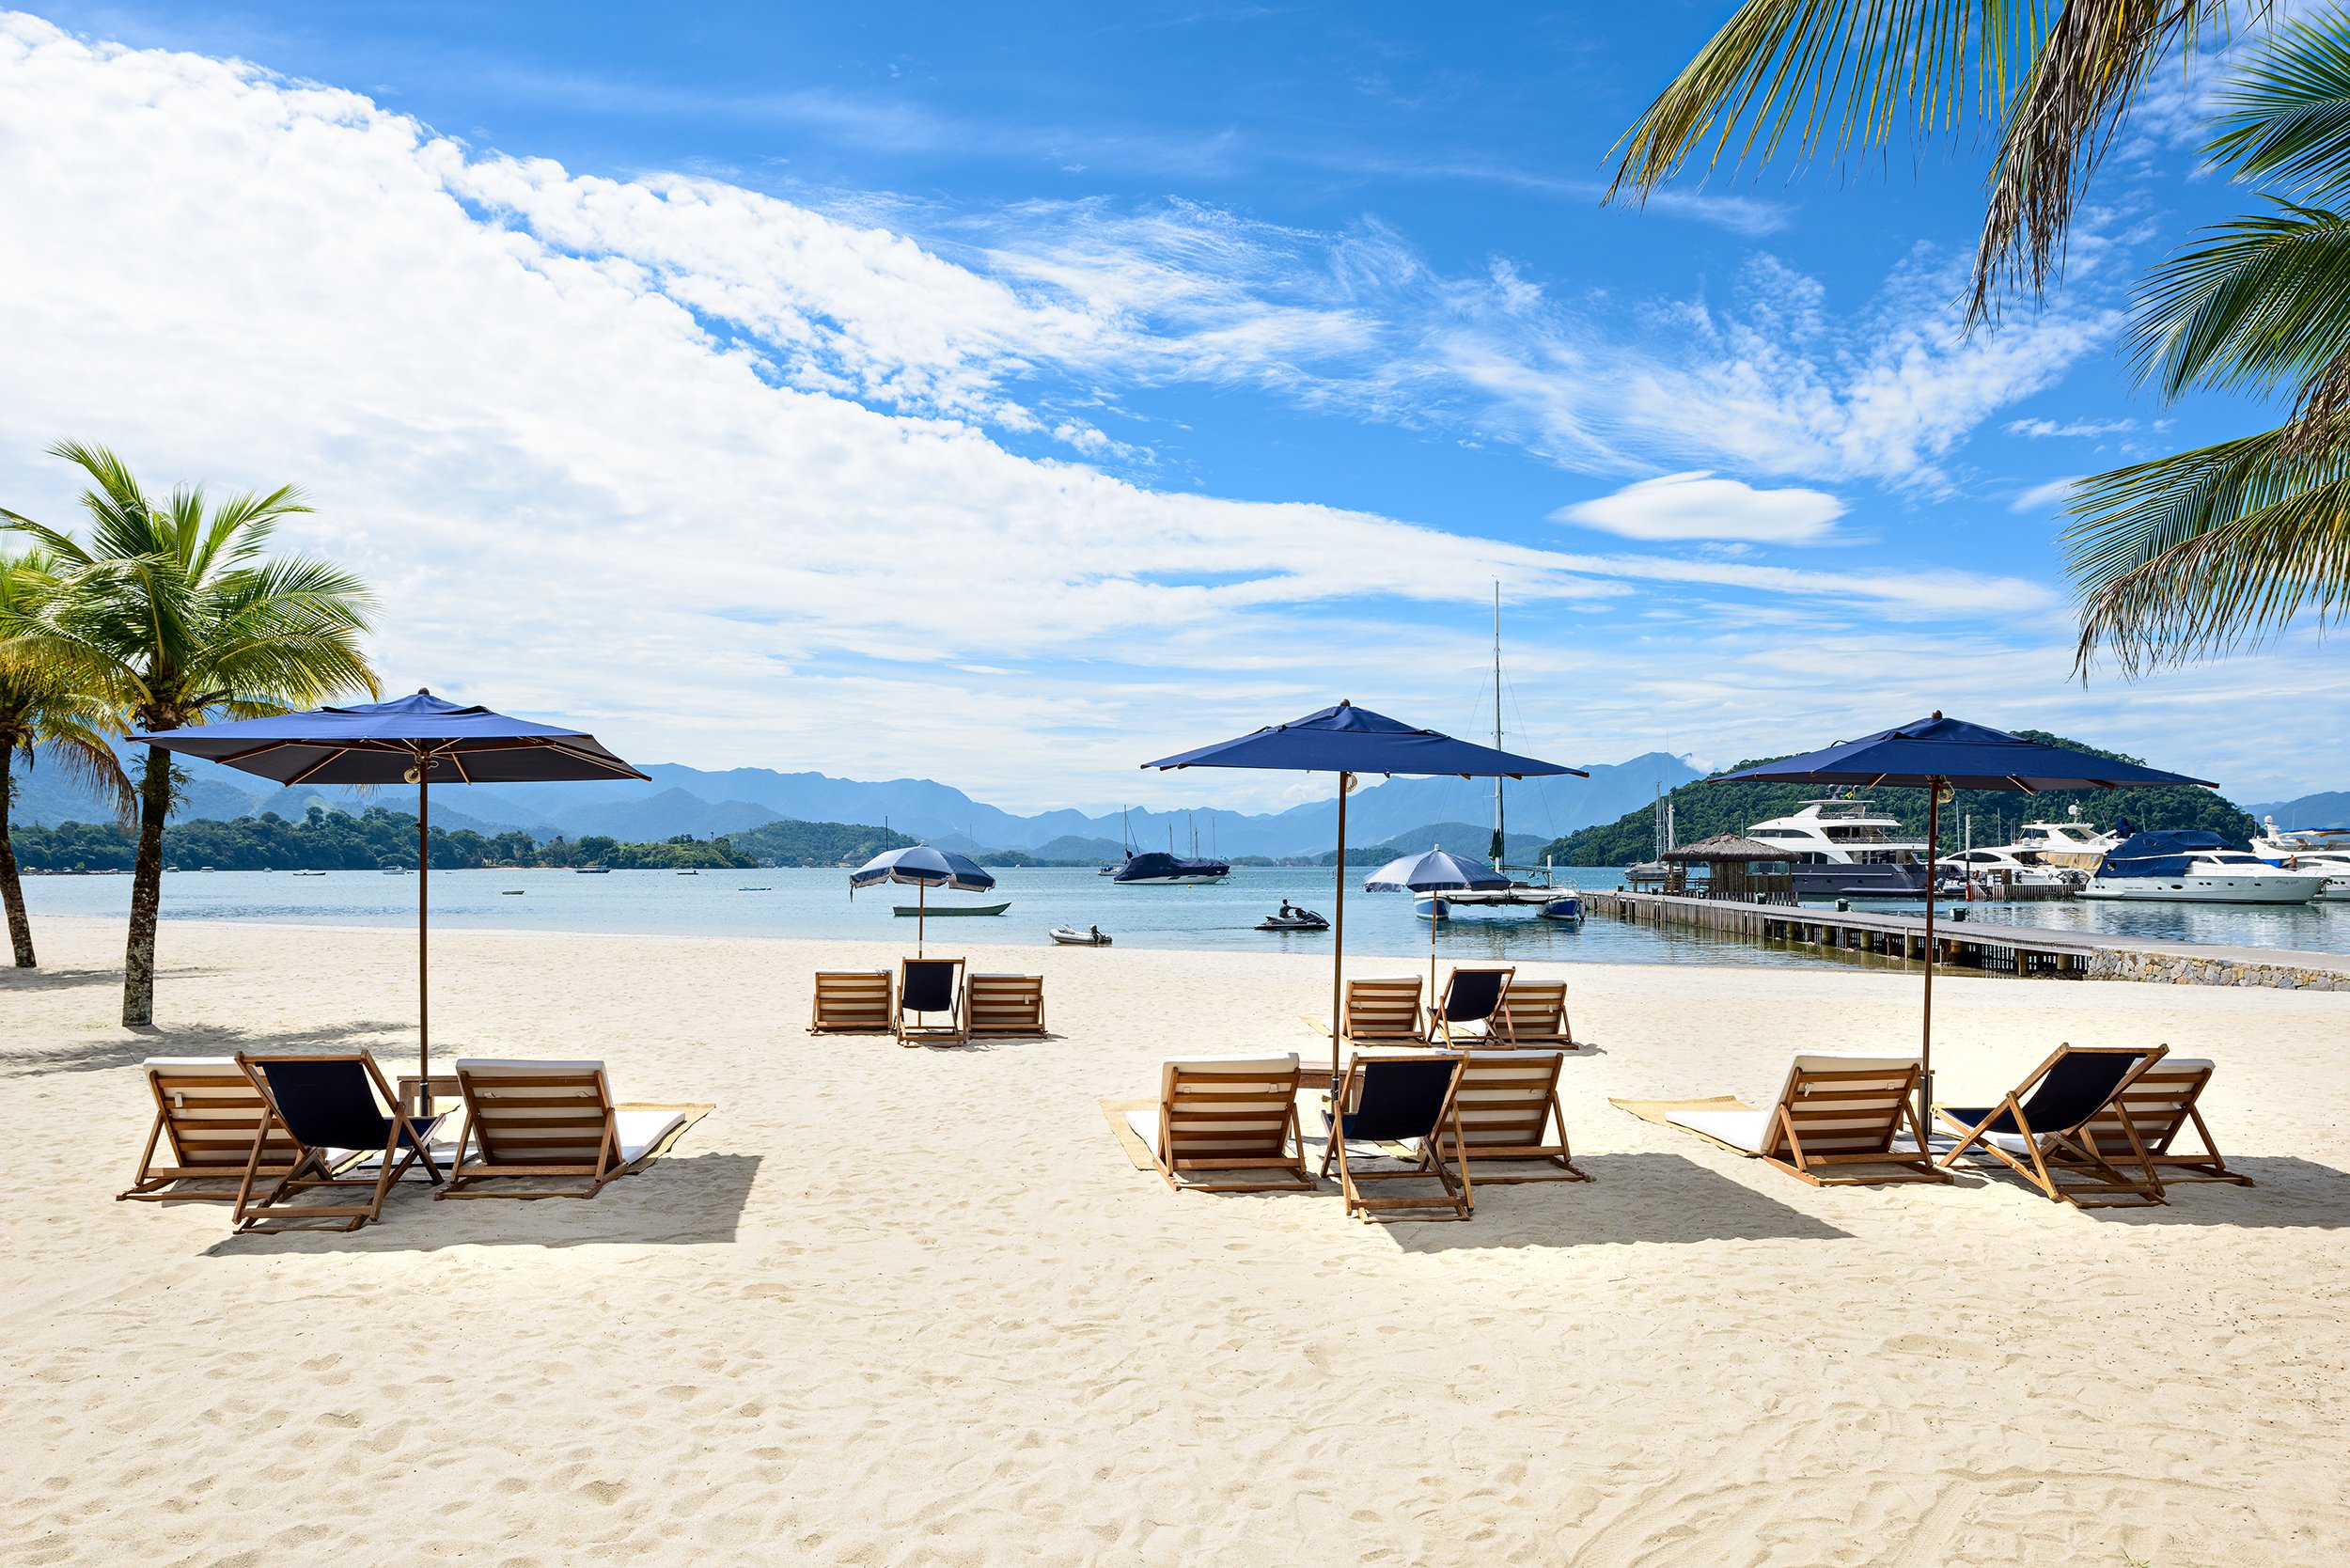 Hotel Fasano Angra dos Reis Plajı'in fotoğrafı - Çocuklu aile gezginleri için önerilir